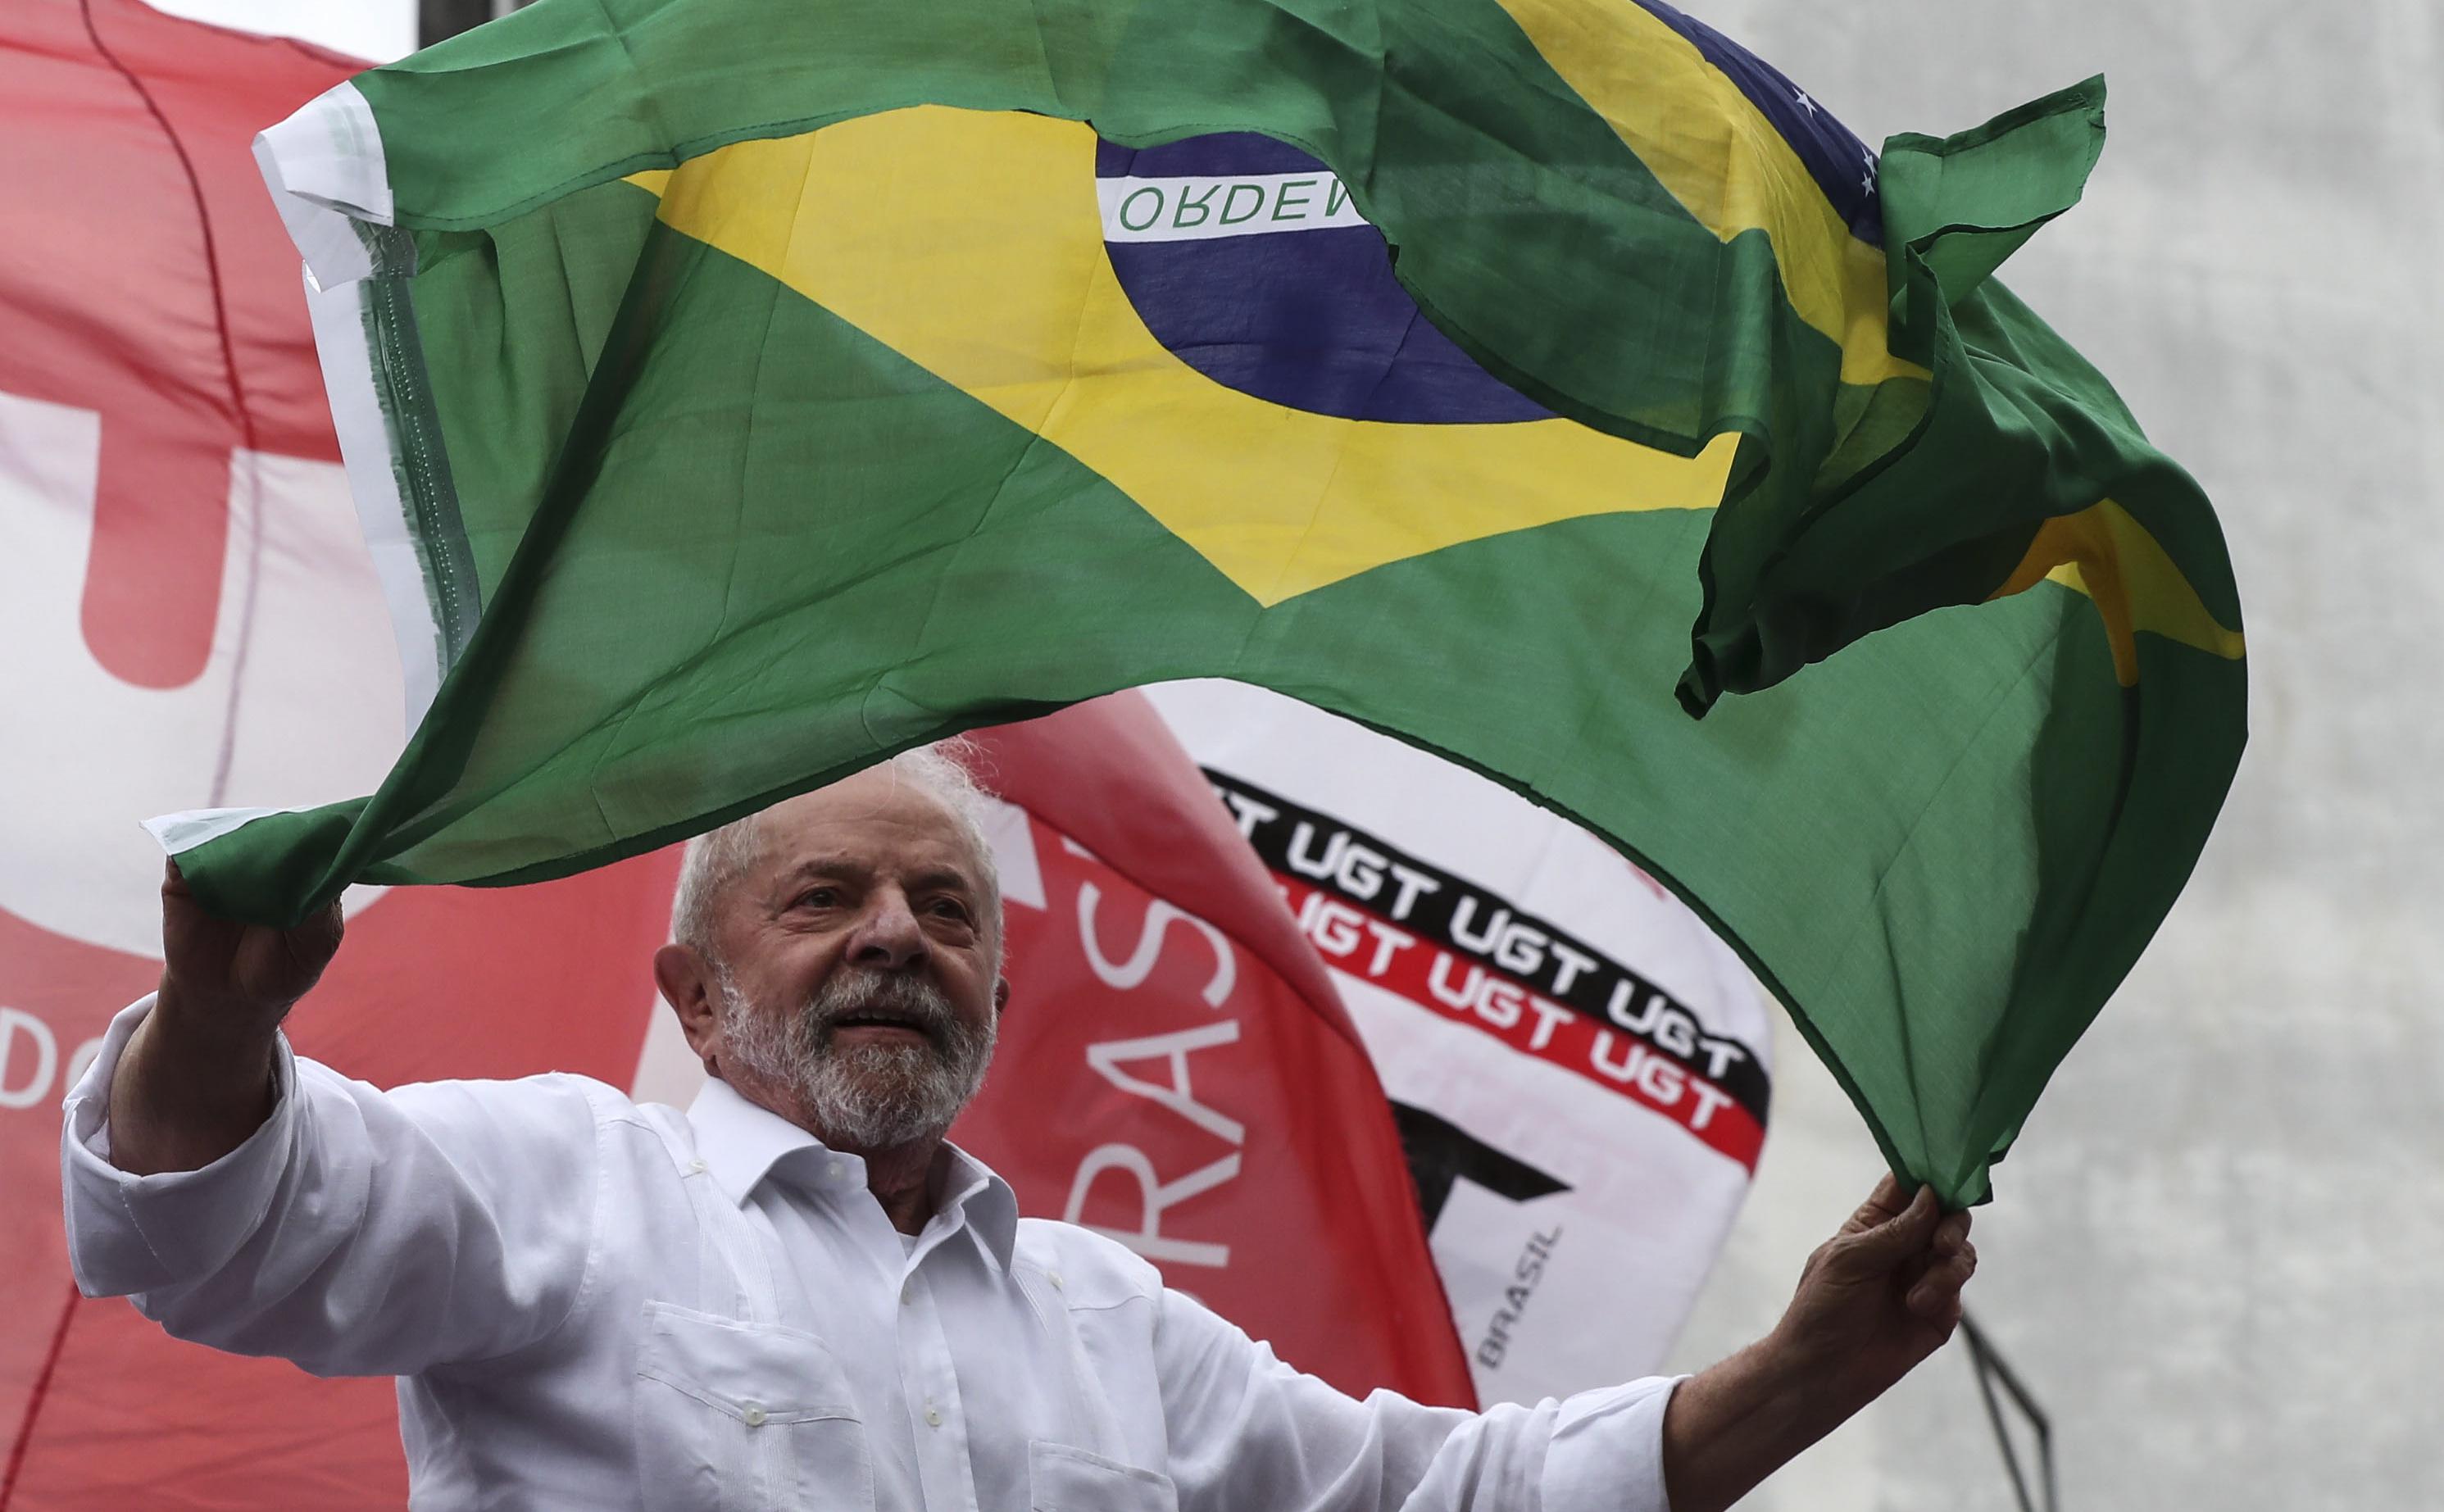 Из тюрьмы в президенты. Как и почему социалист Лула де Сильва победил на выборах фашистского диктатора Болсонару